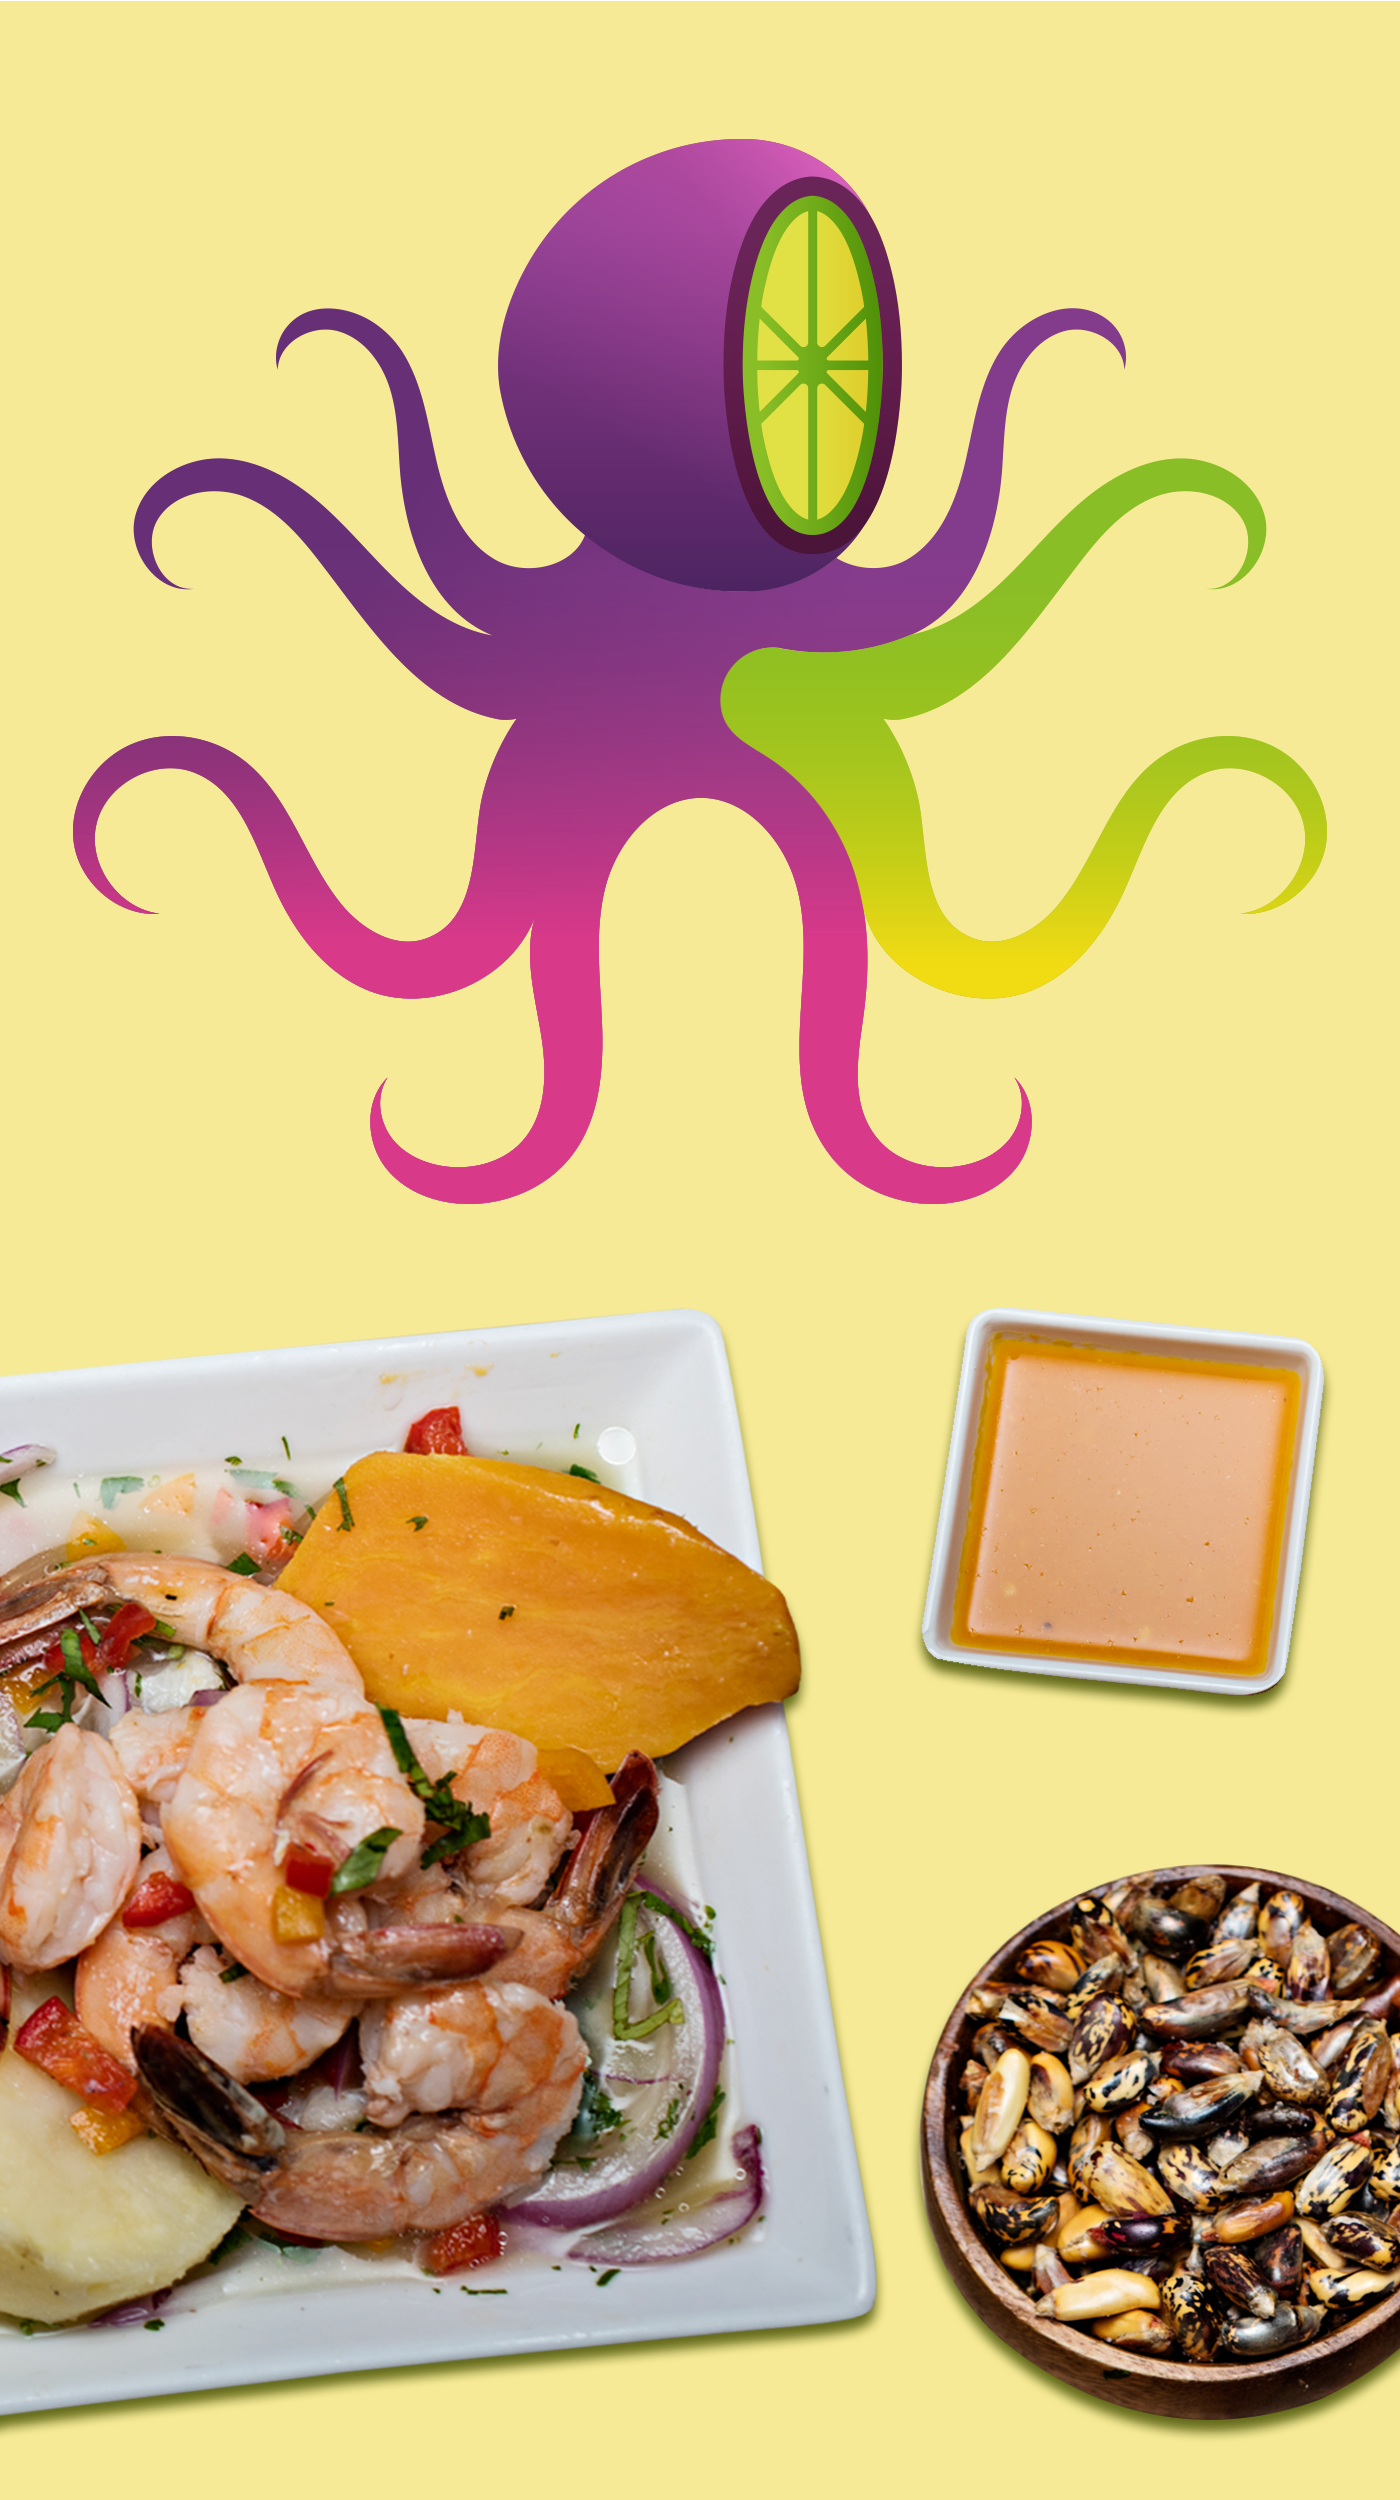 Food  branding  restaurant fish corporare image Packaging Designe logo Graphic designe